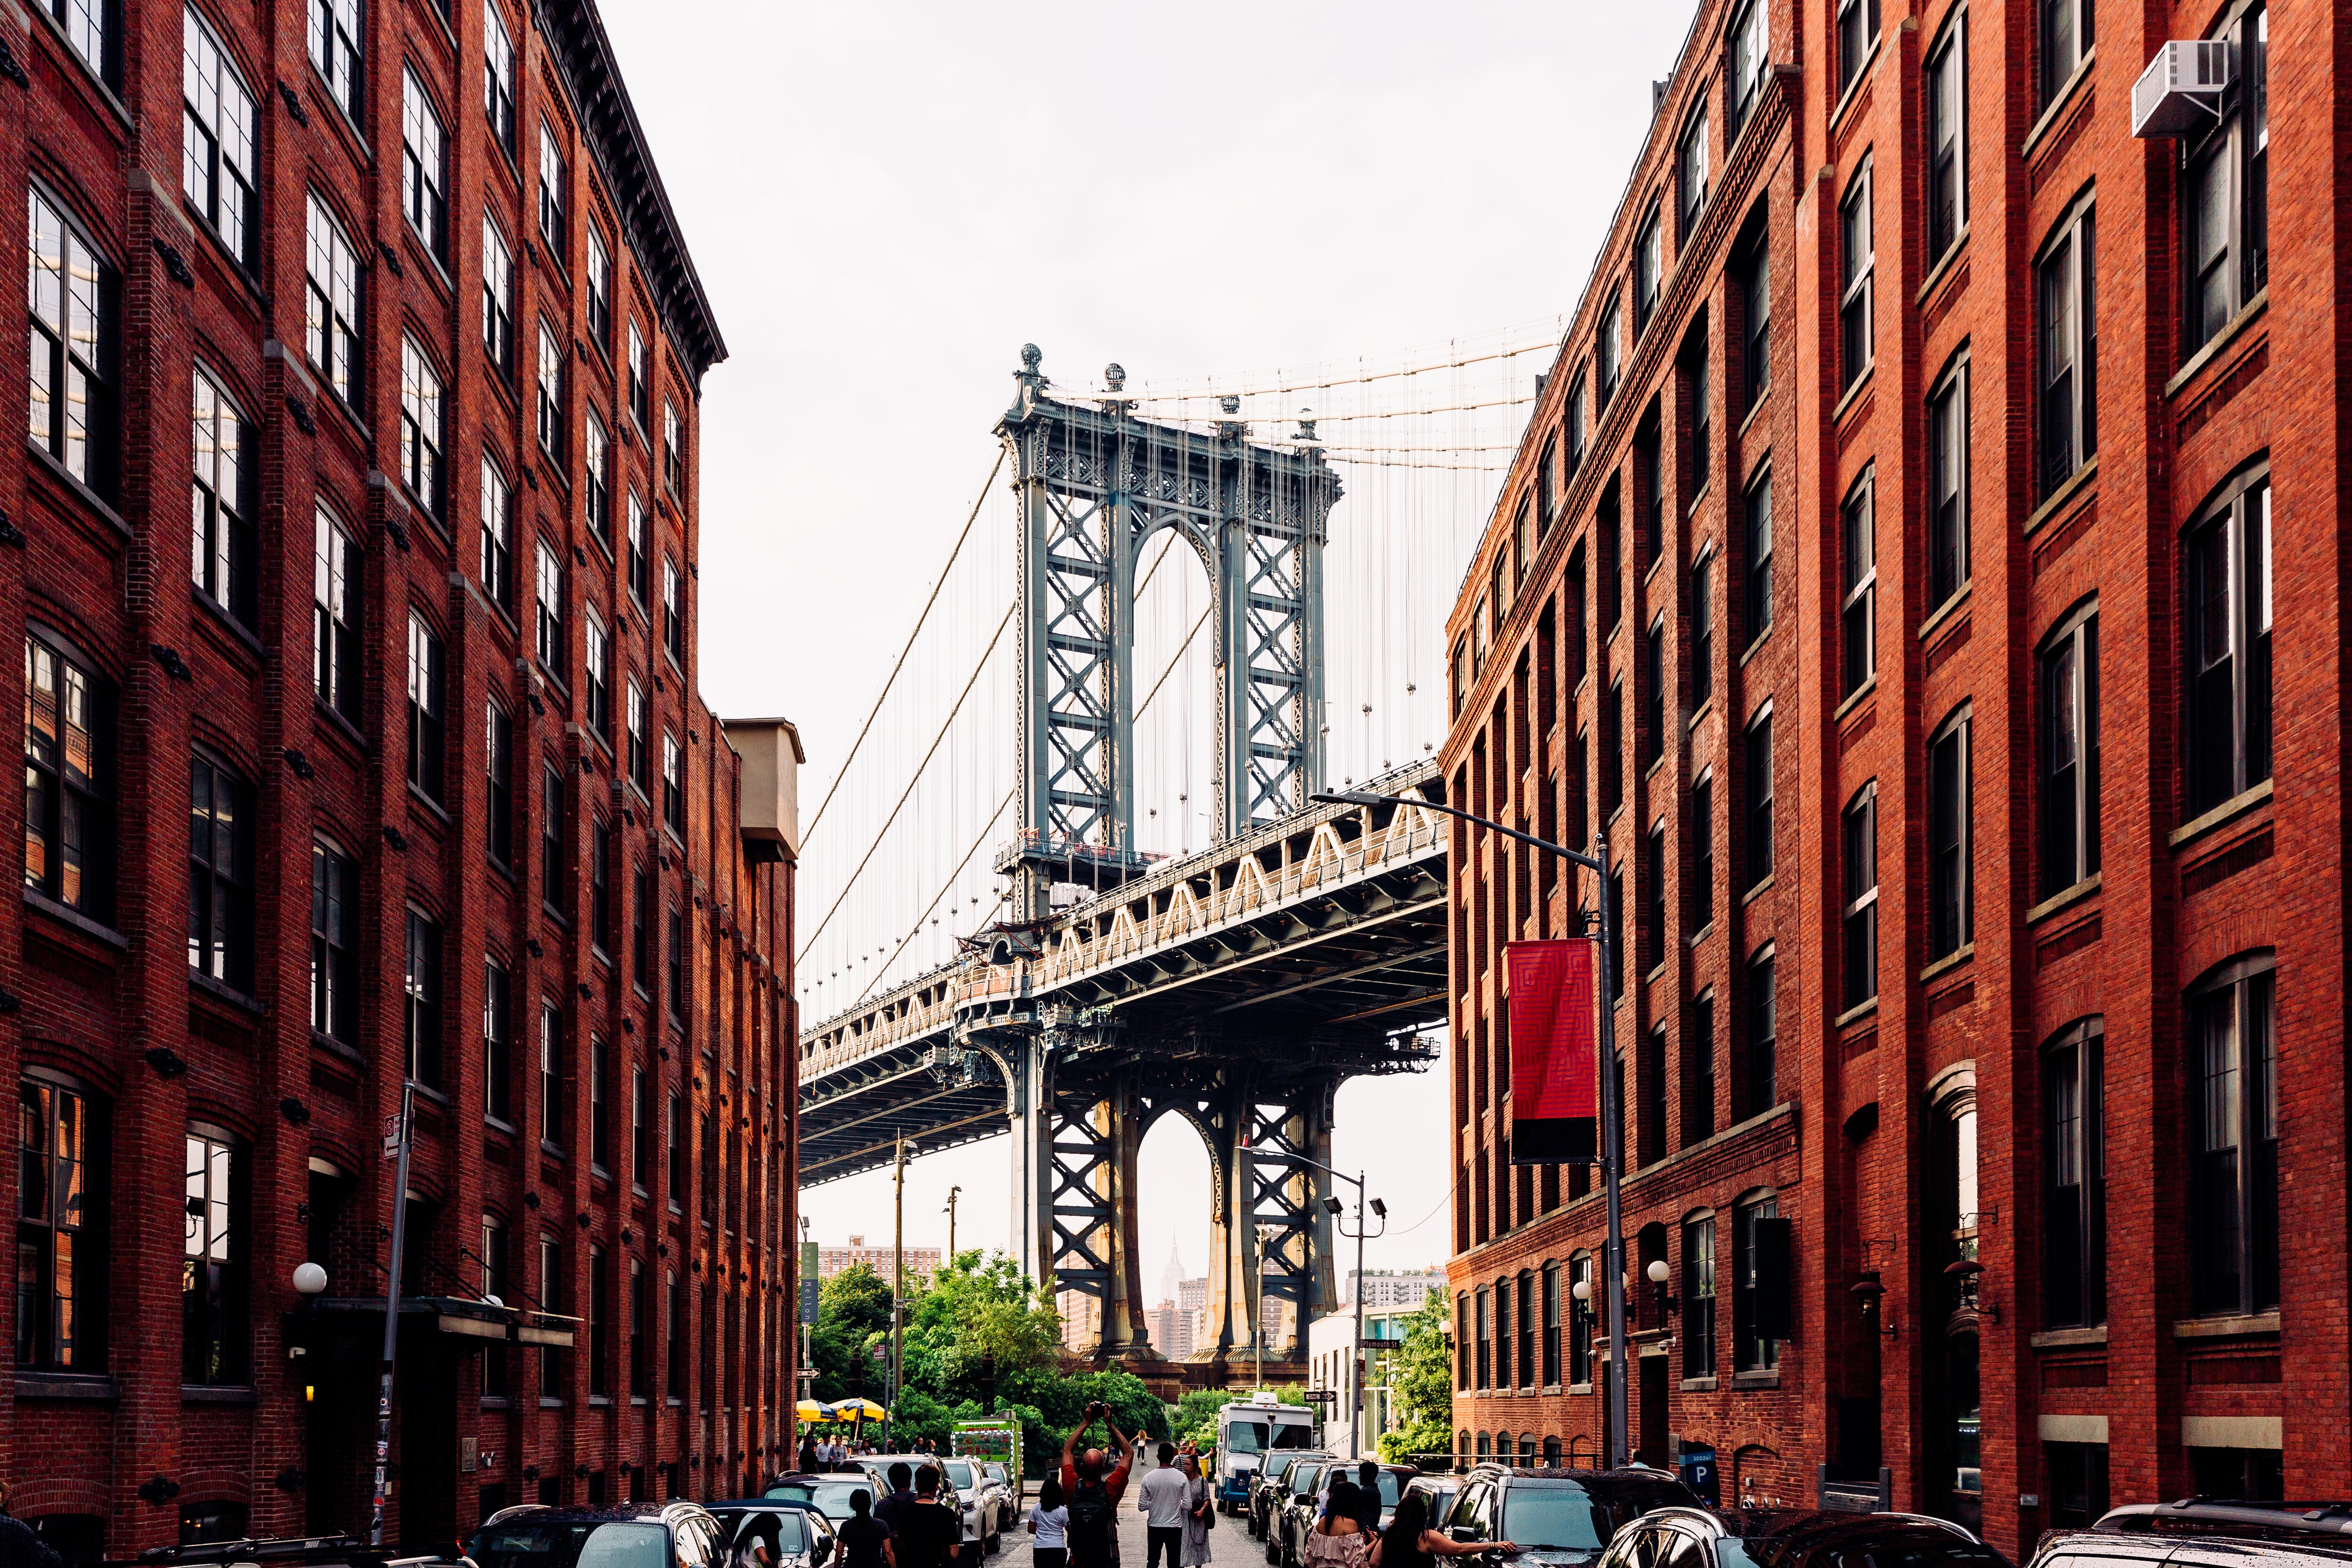 Puente de Manhattan desde una calle del barrio de Dumbo, uno de los puntos más fotografiados de Brooklyn.